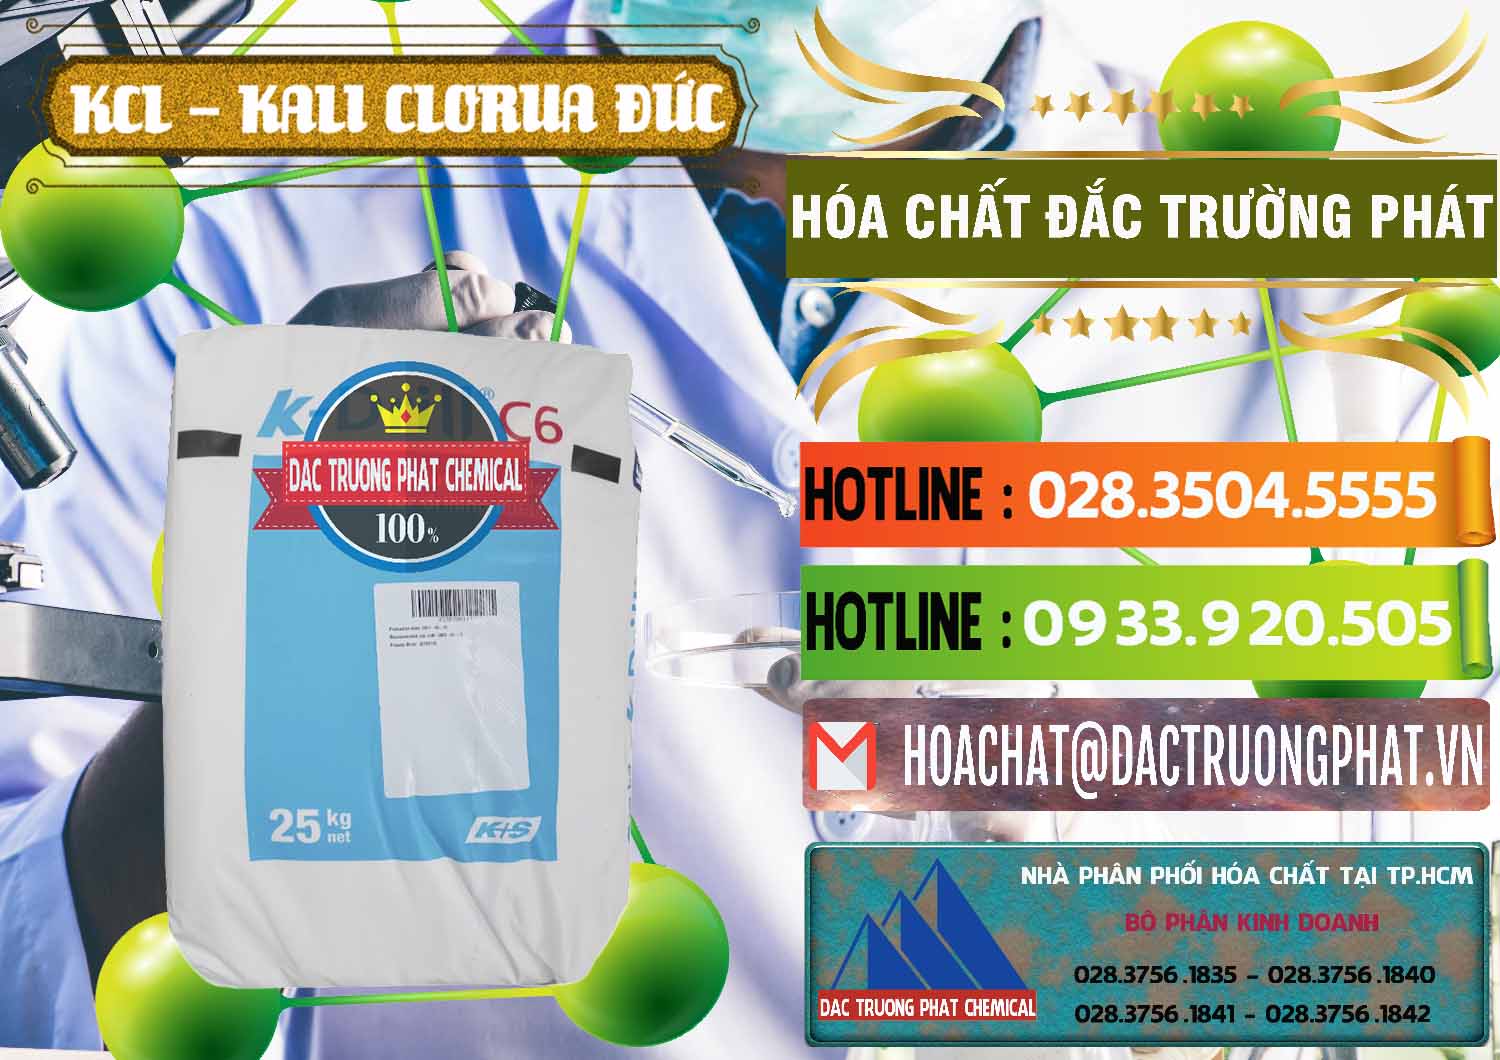 Chuyên kinh doanh _ bán KCL – Kali Clorua Trắng K DRILL Đức Germany - 0428 - Công ty phân phối & cung cấp hóa chất tại TP.HCM - cungcaphoachat.com.vn